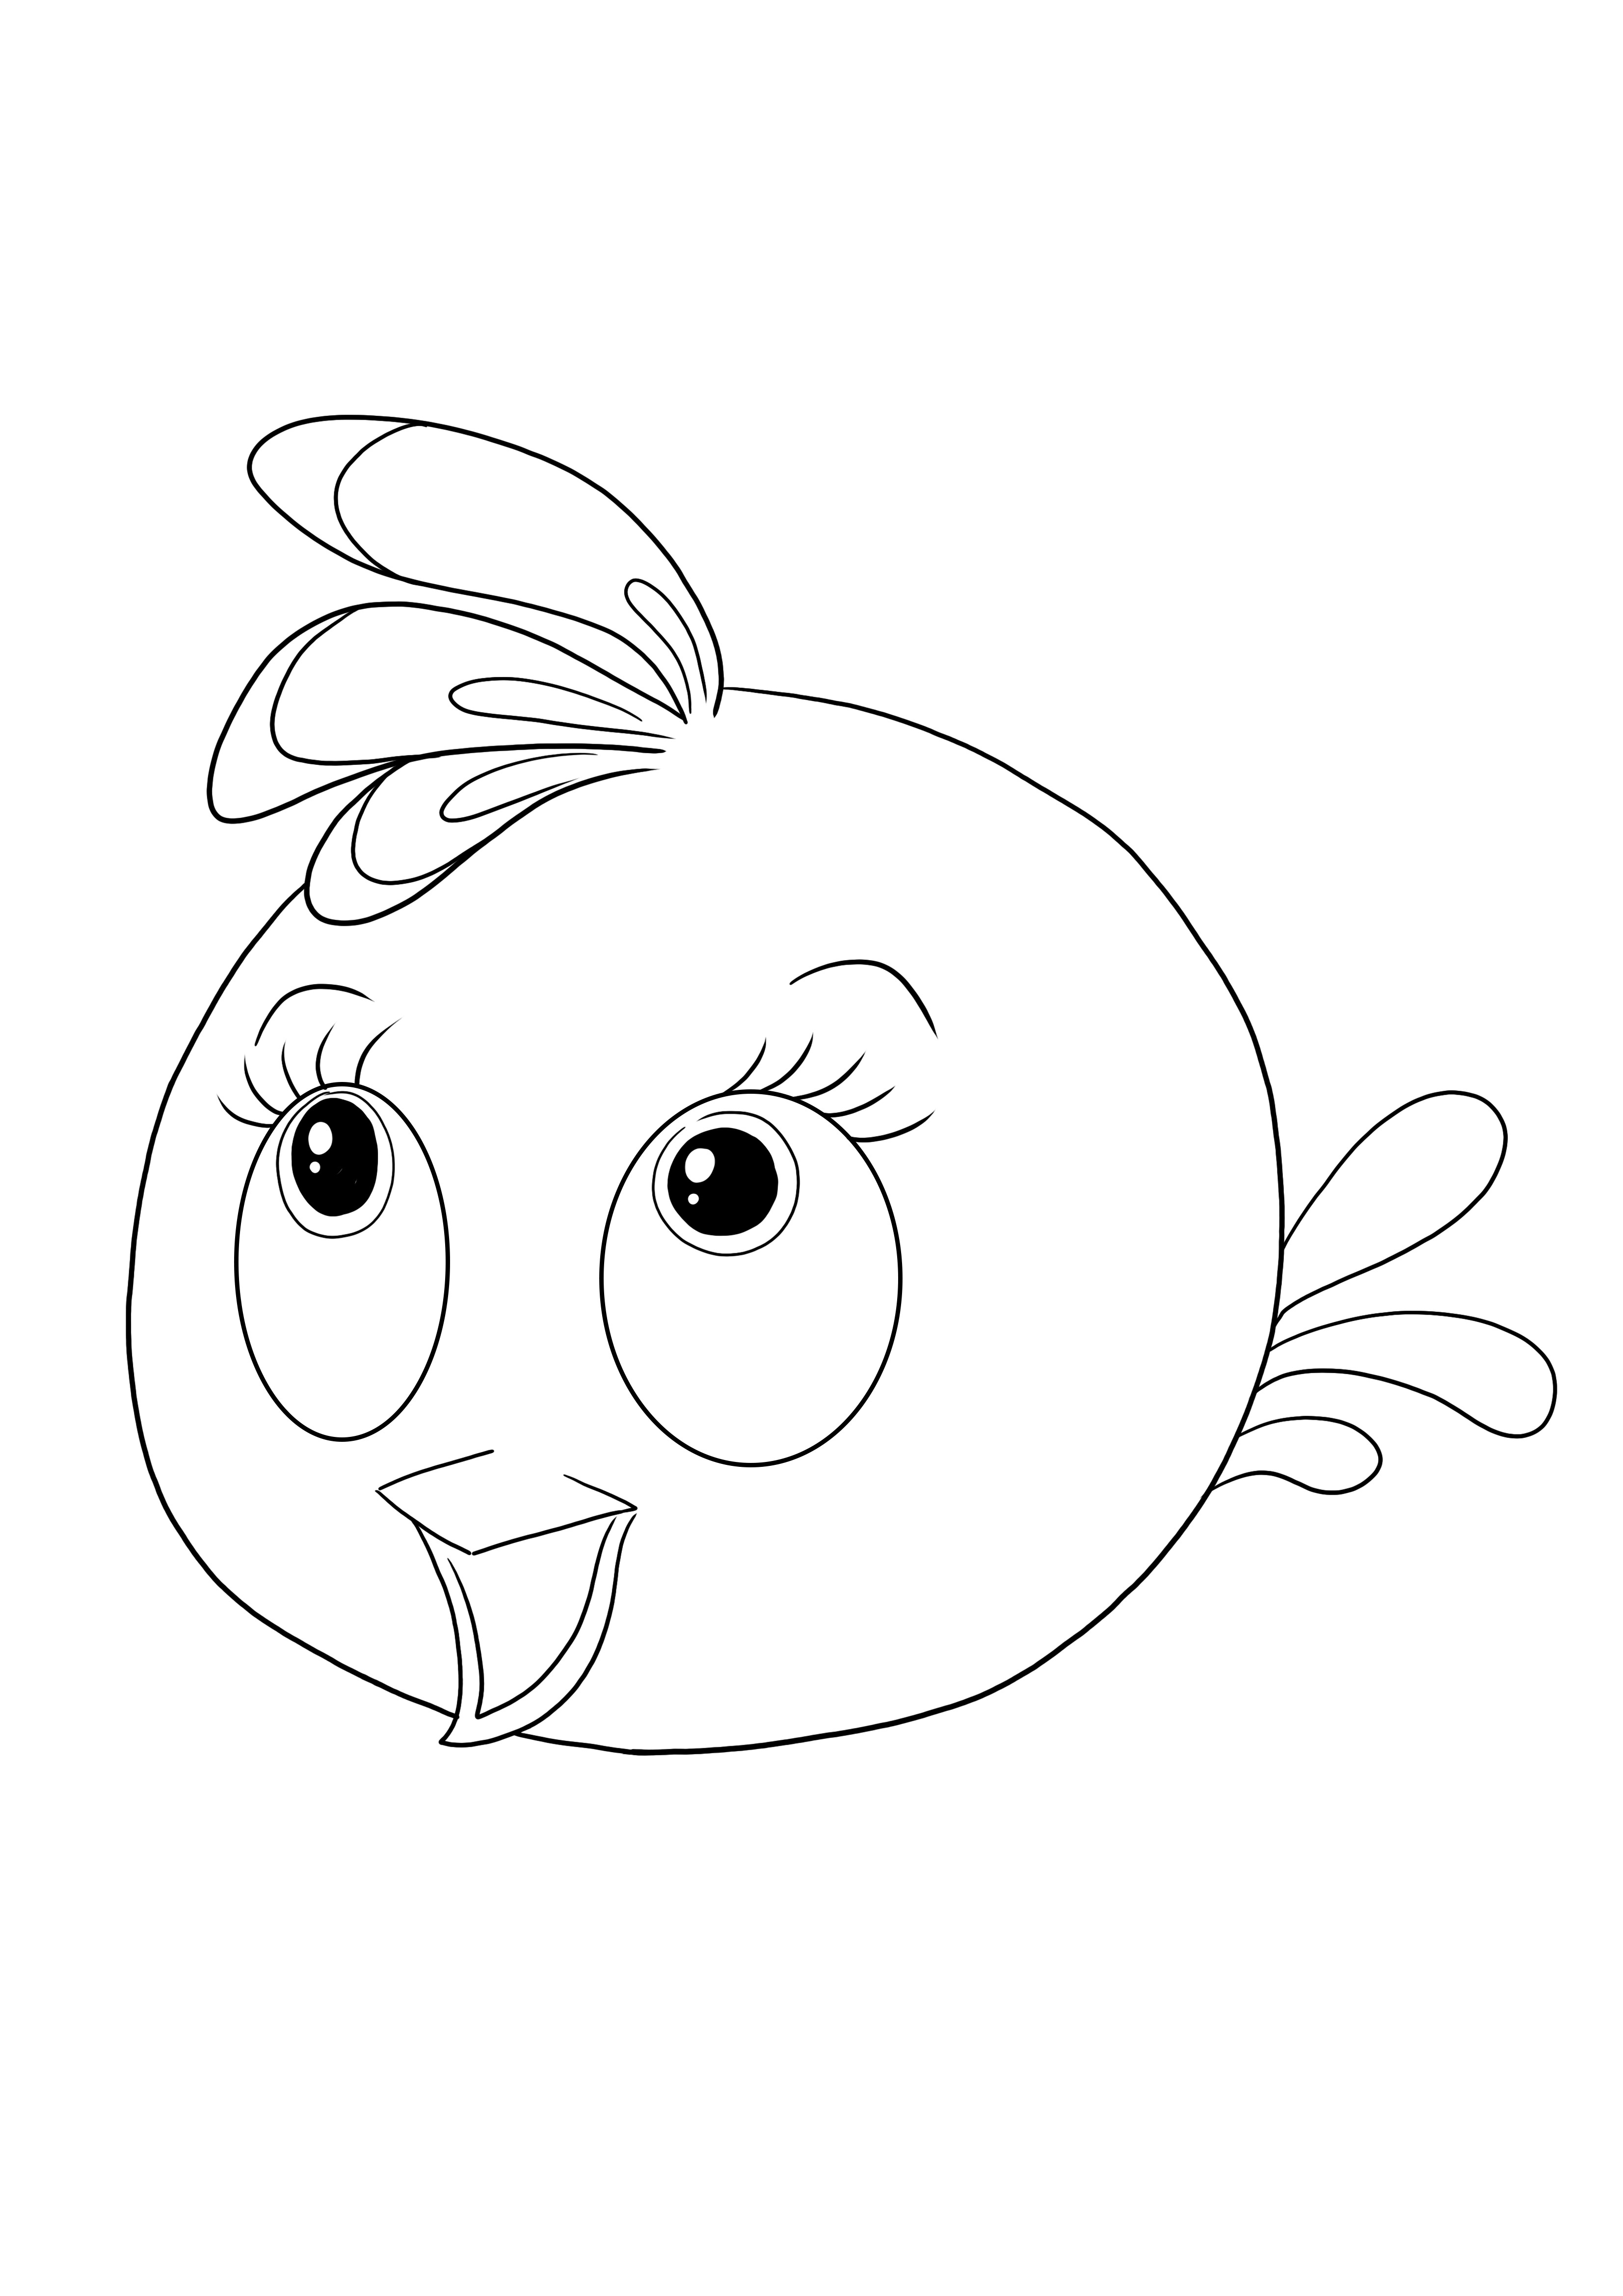 Stella dari Angry birds dapat dicetak gratis untuk mewarnai untuk anak-anak